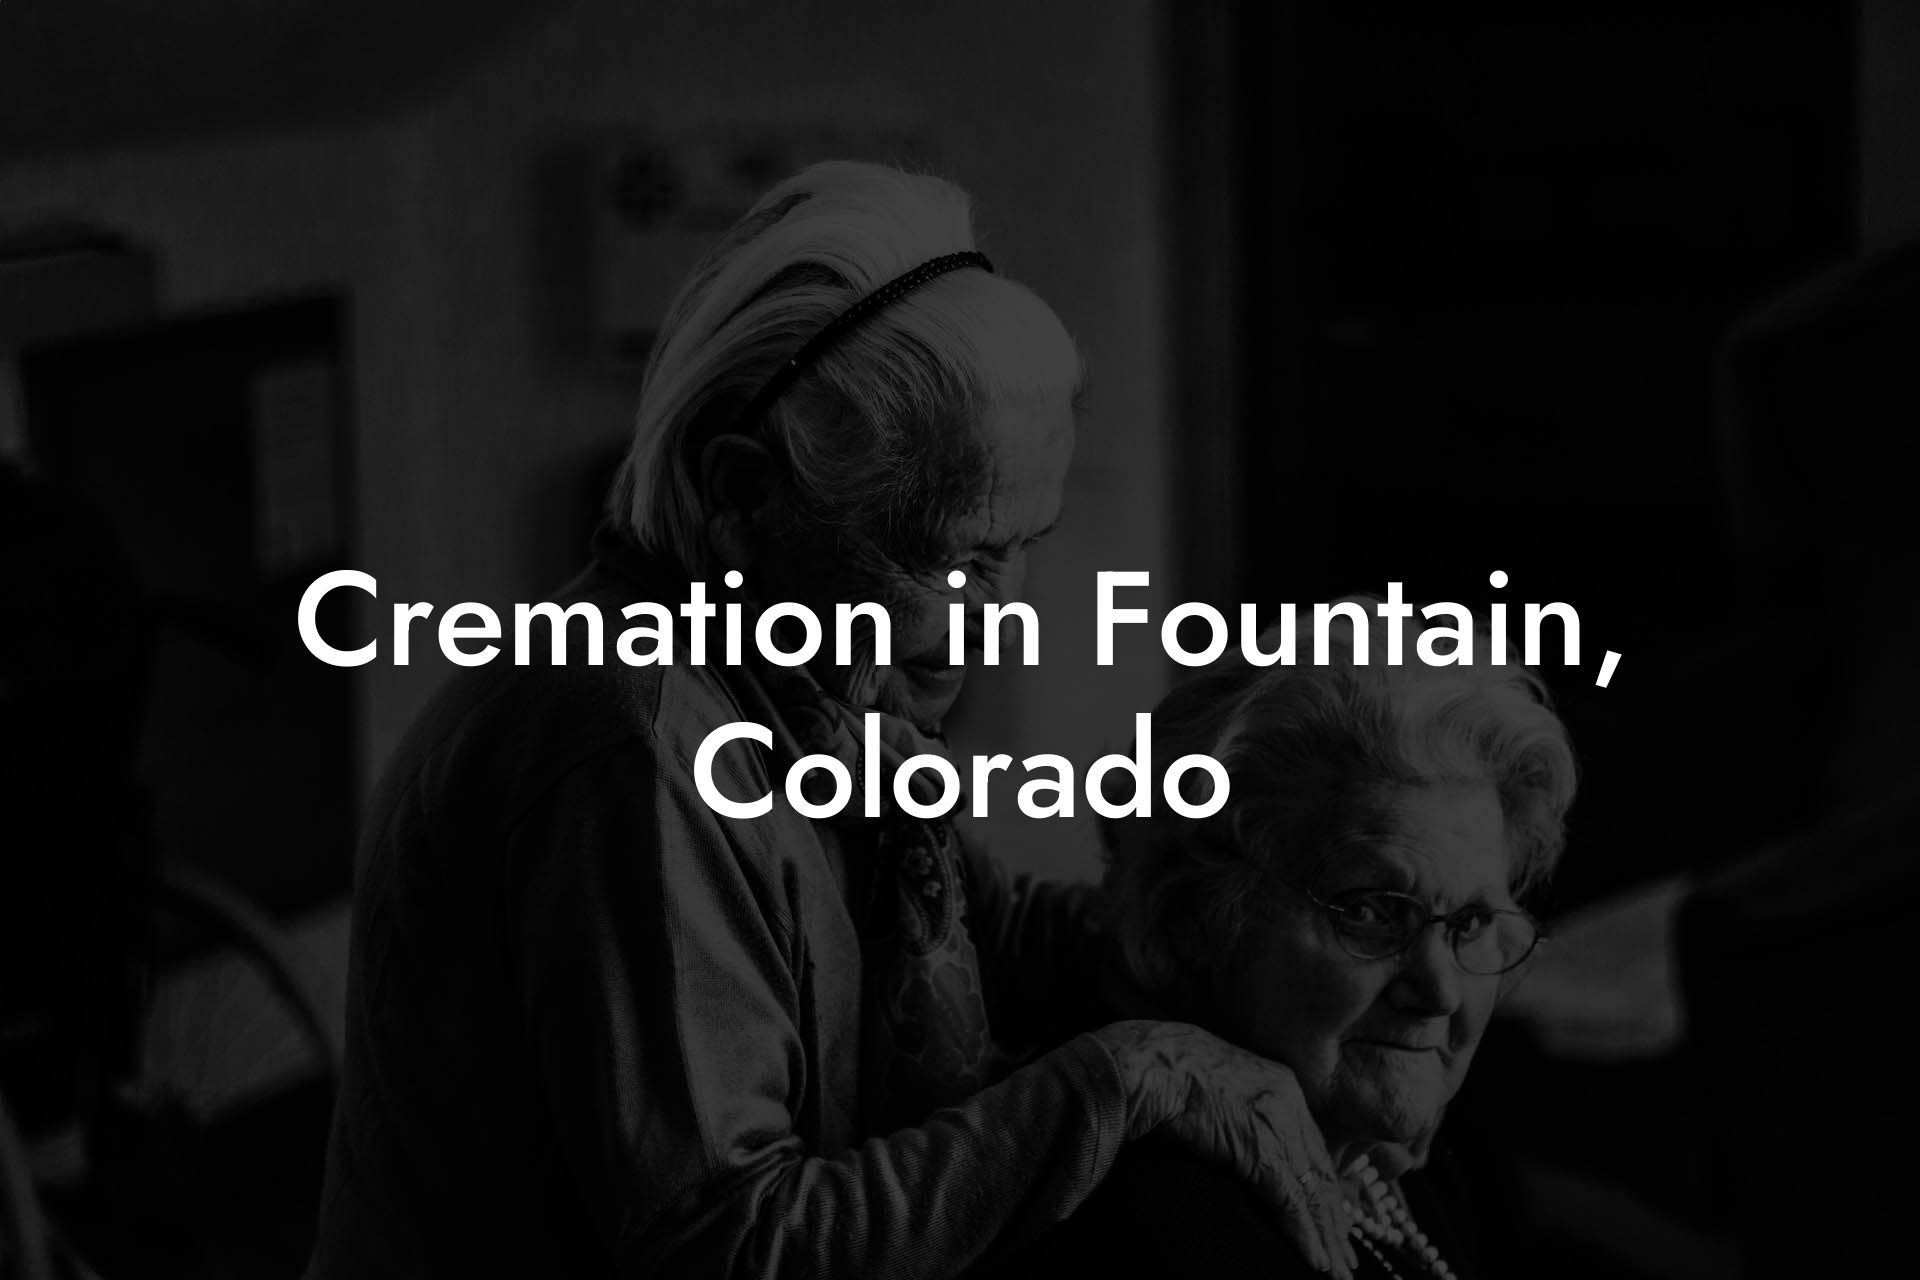 Cremation in Fountain, Colorado